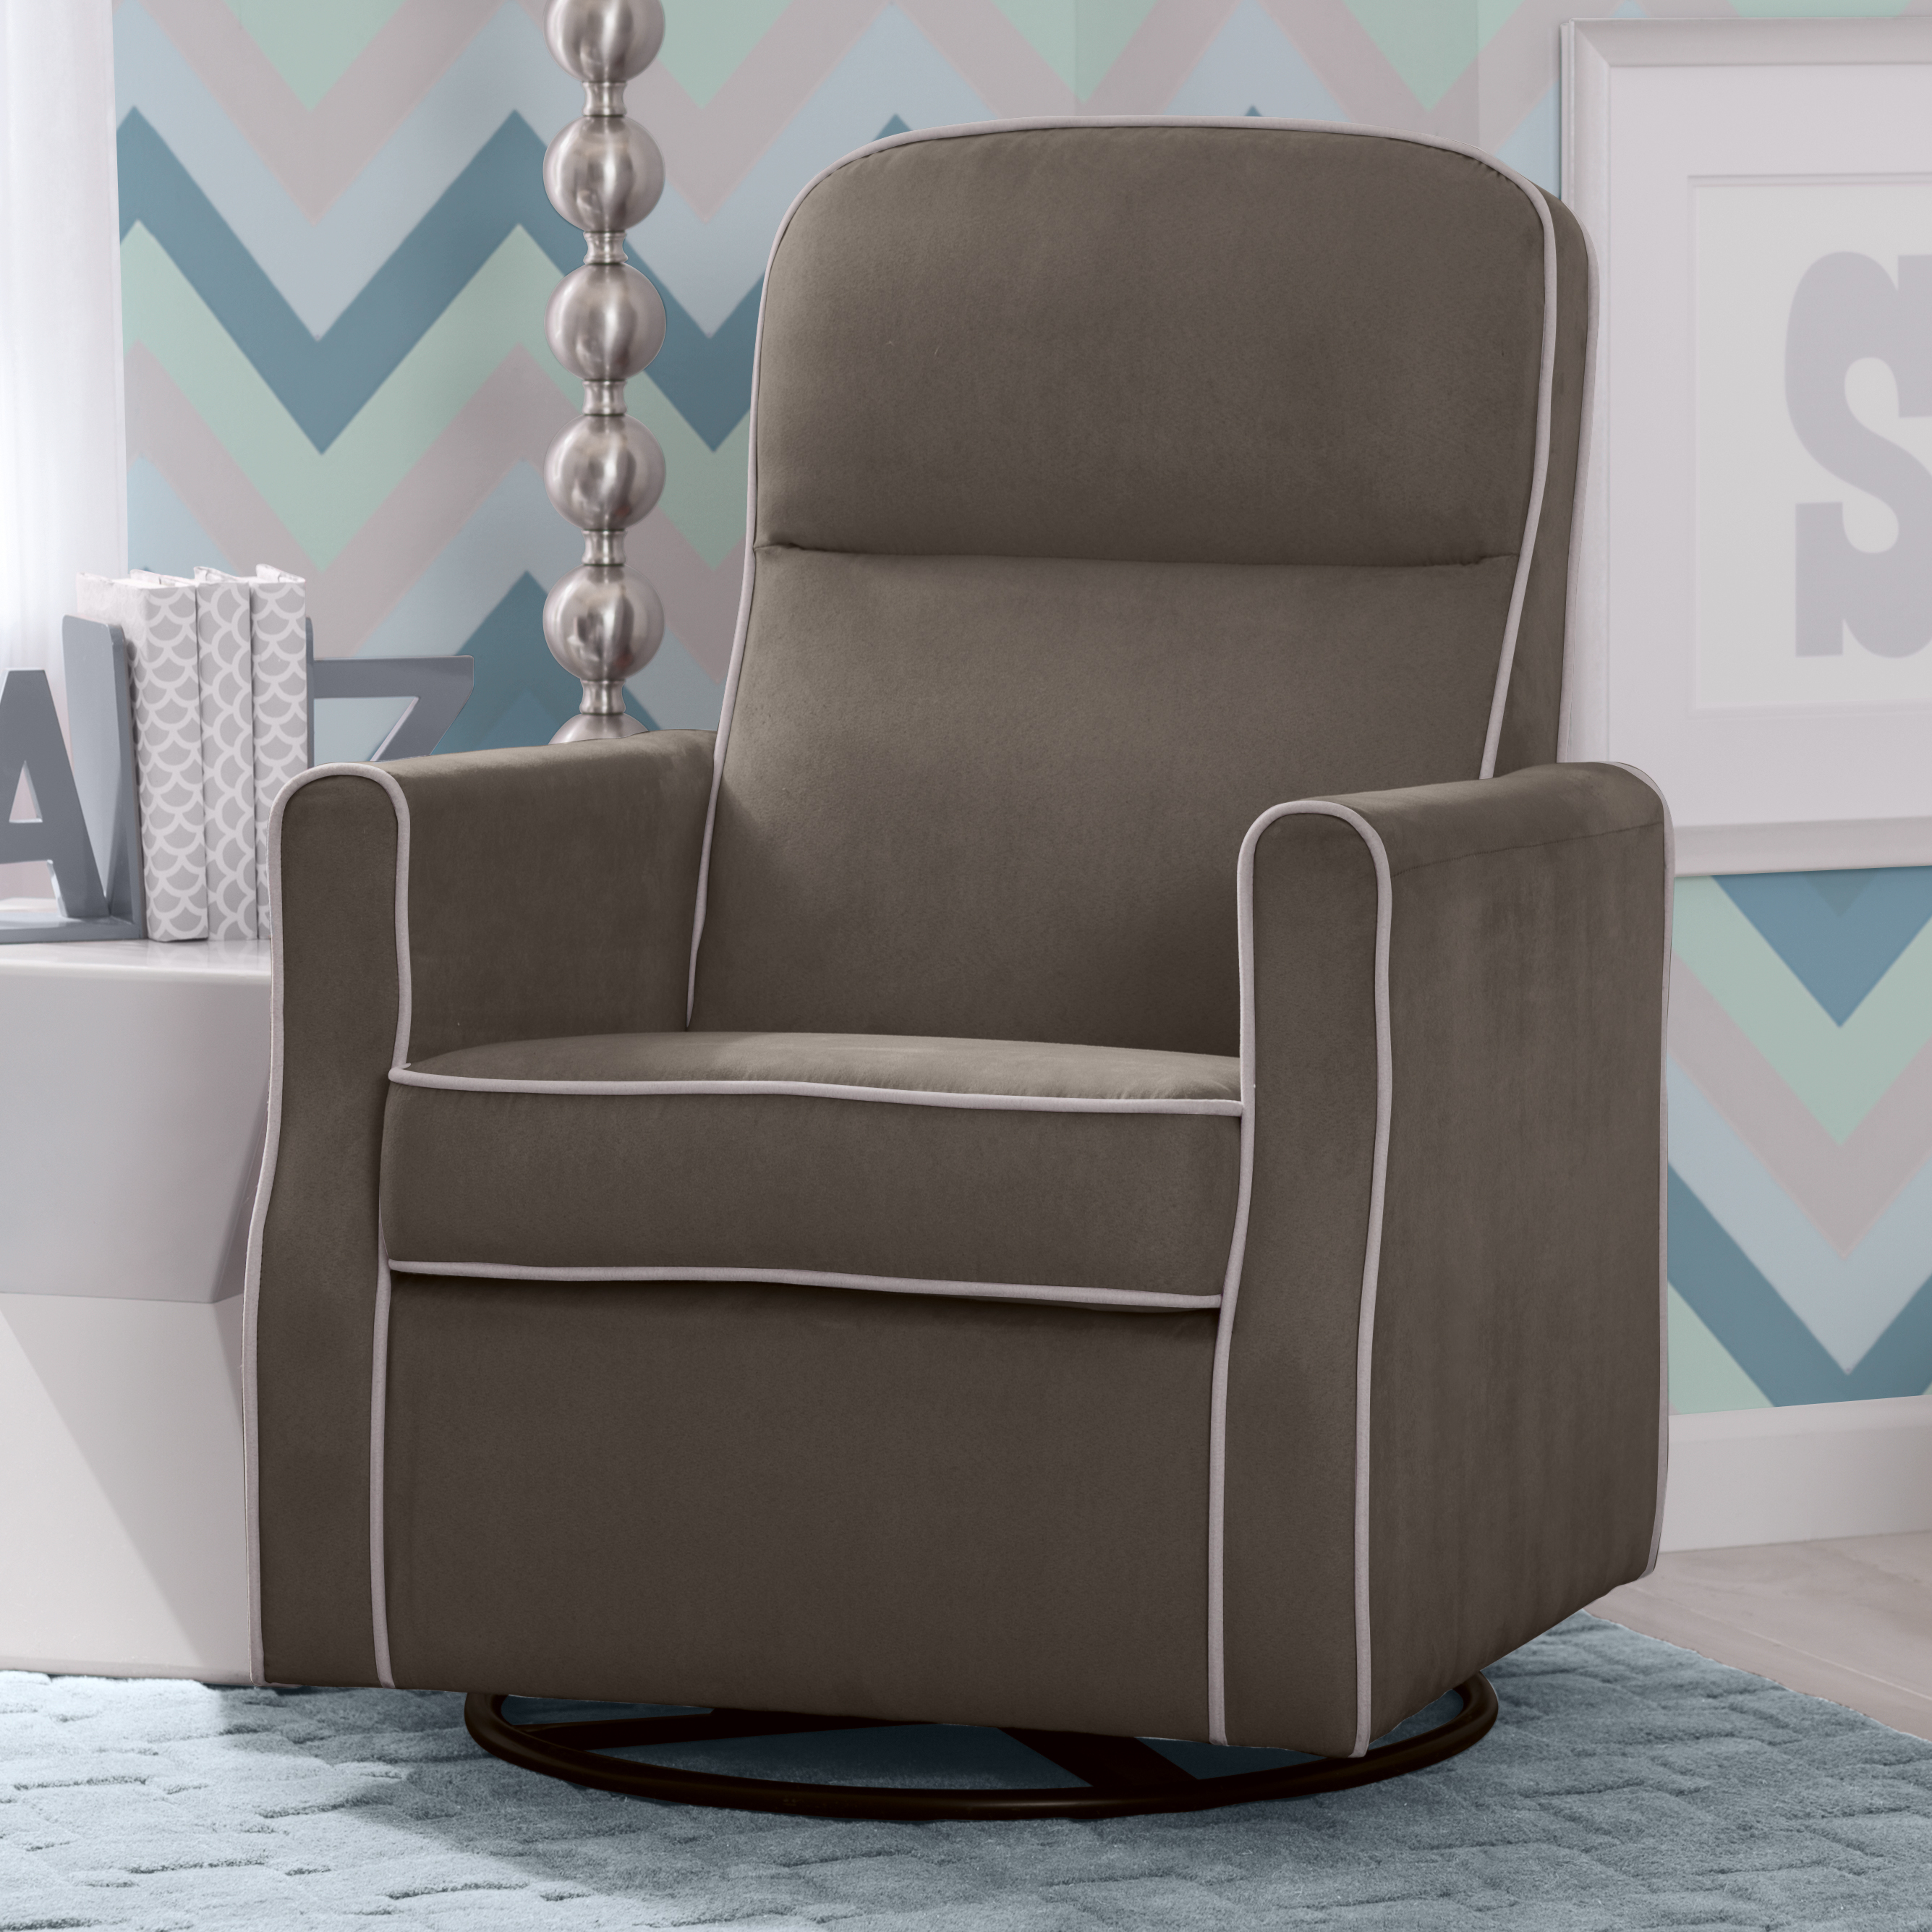 Delta Children Clair Slim Nursery Glider Swivel Rocker Chair, Graphite with Dove Grey Welt - image 1 of 15